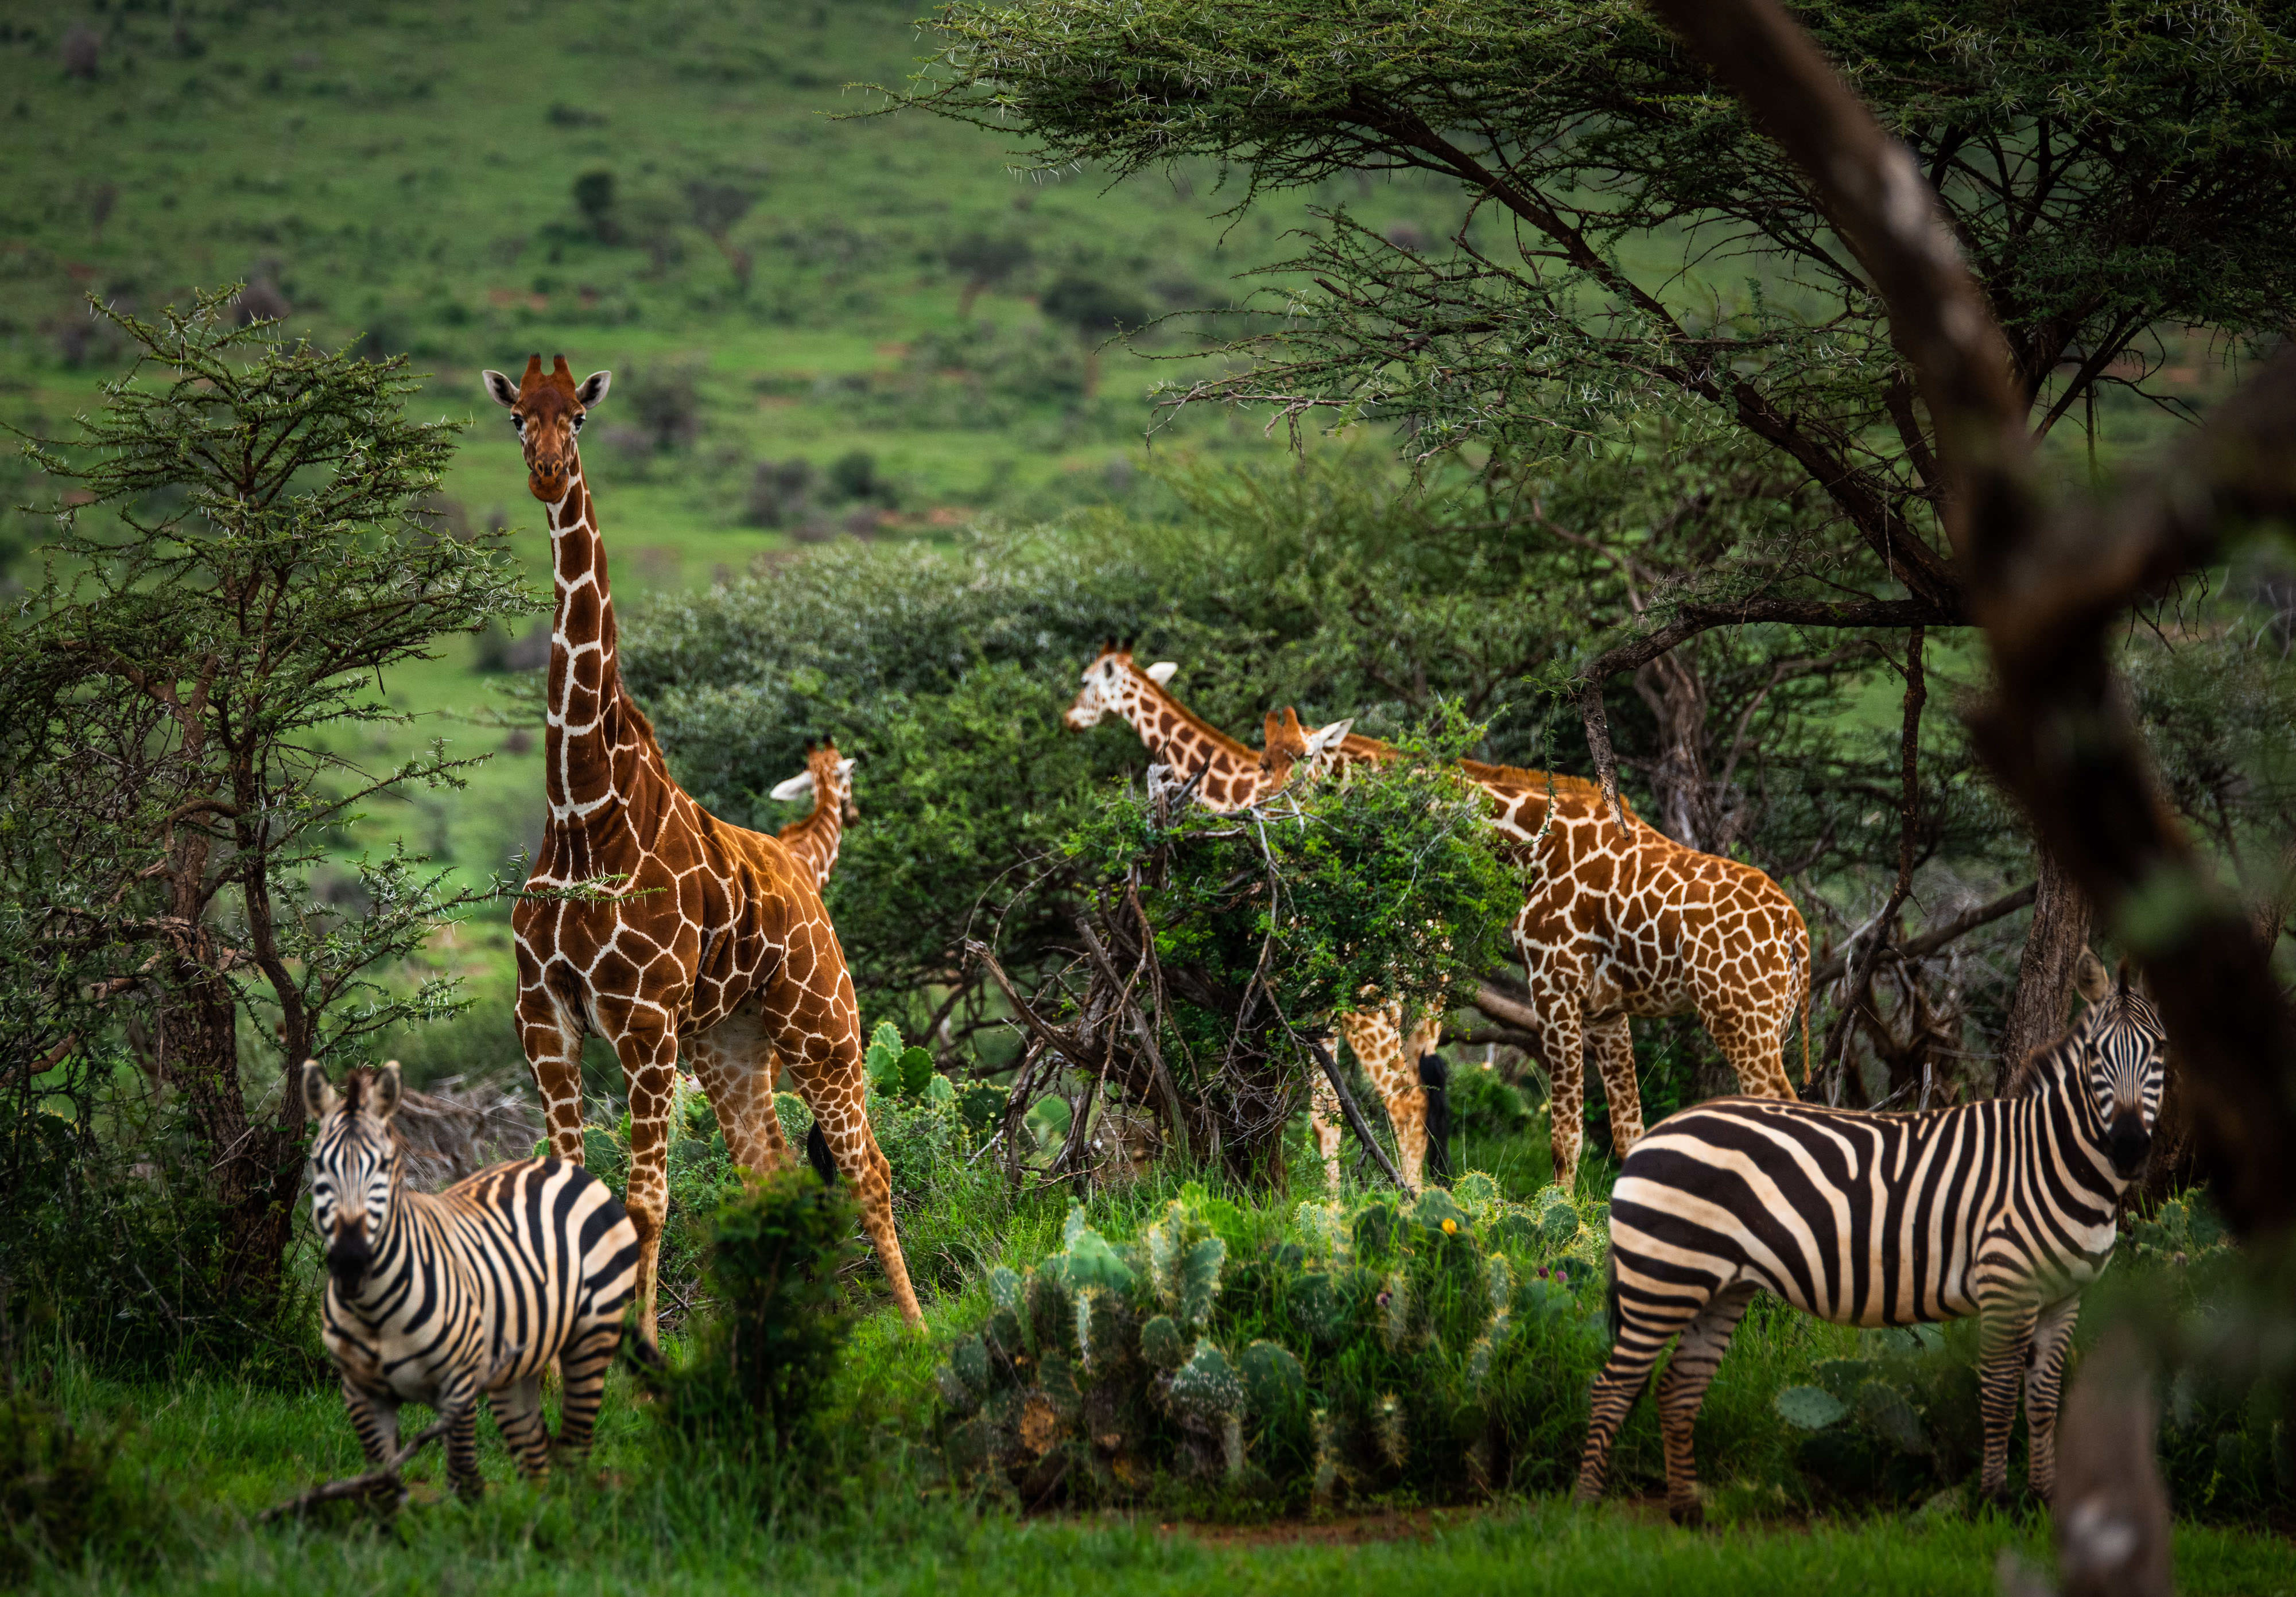 Giraffes and zebra graze on green grass